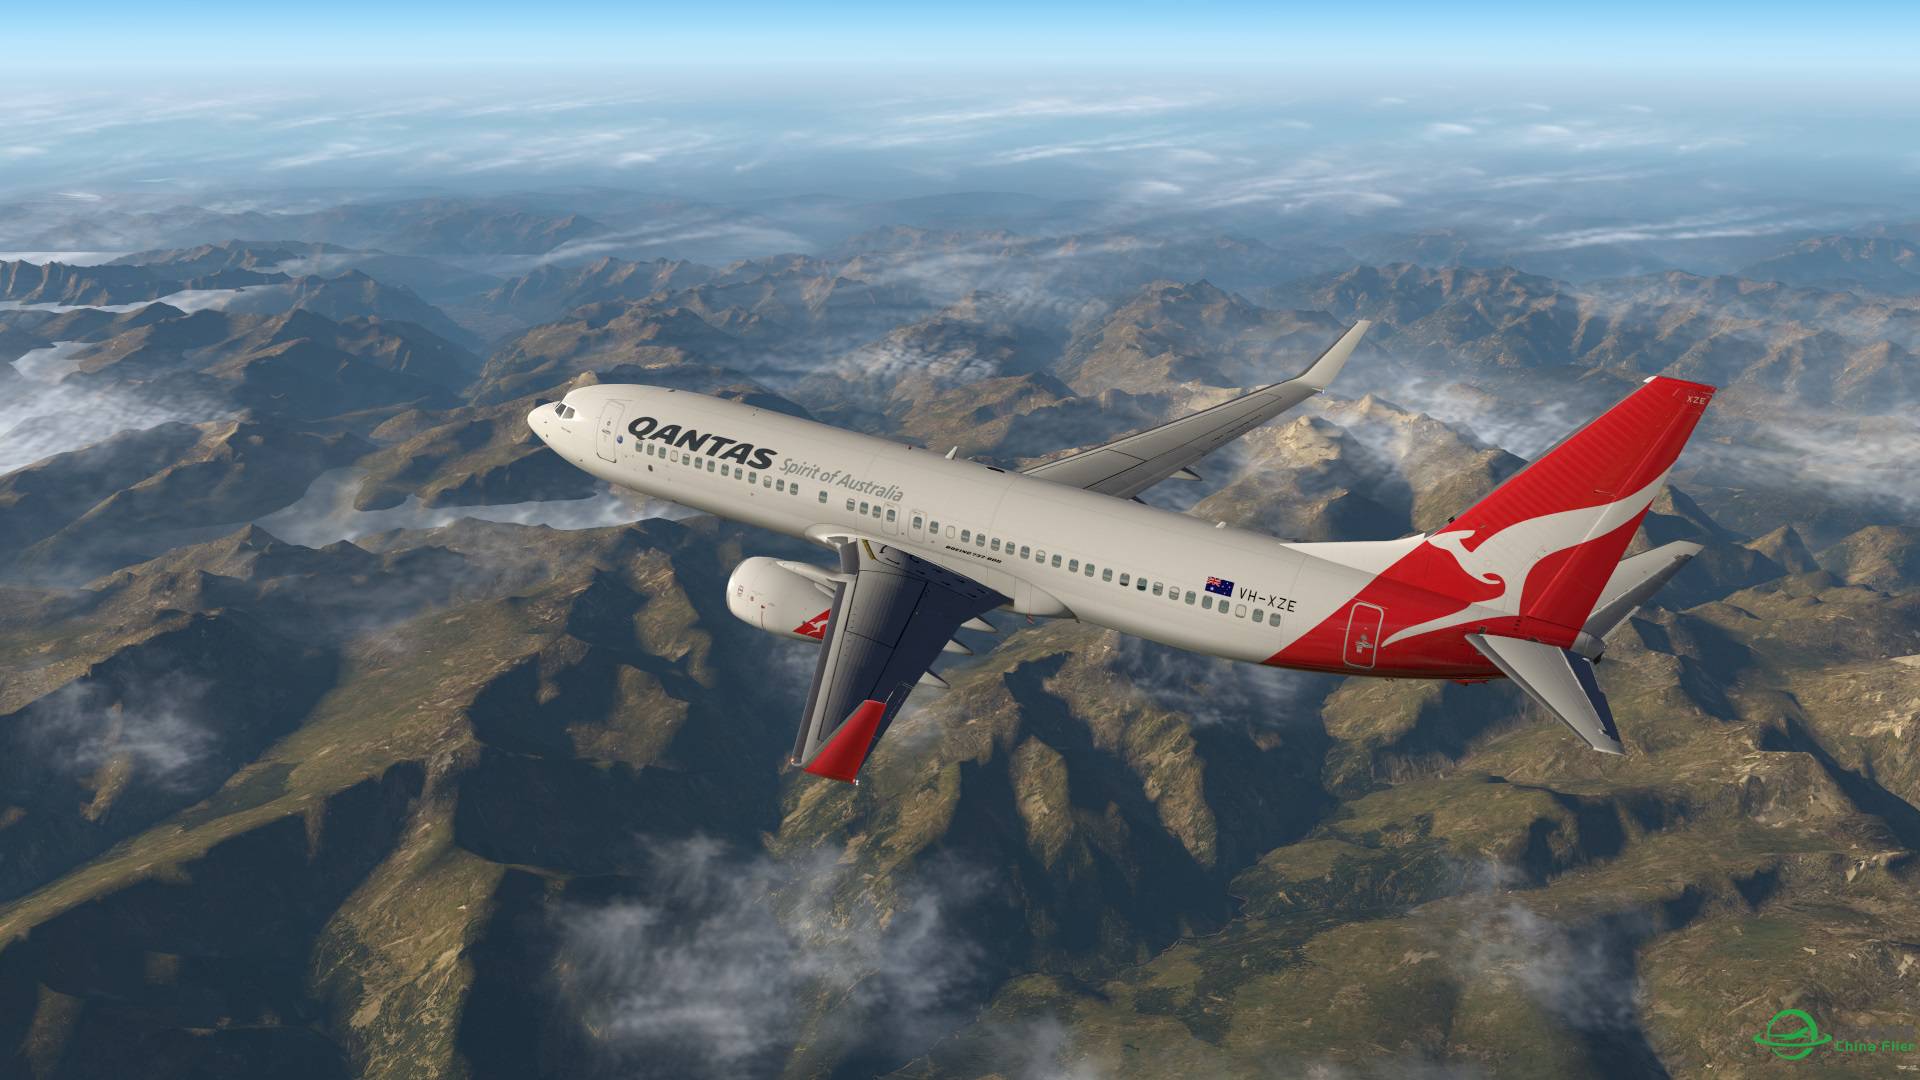 飞跃阿尔卑斯山 X-plane 11-4629 